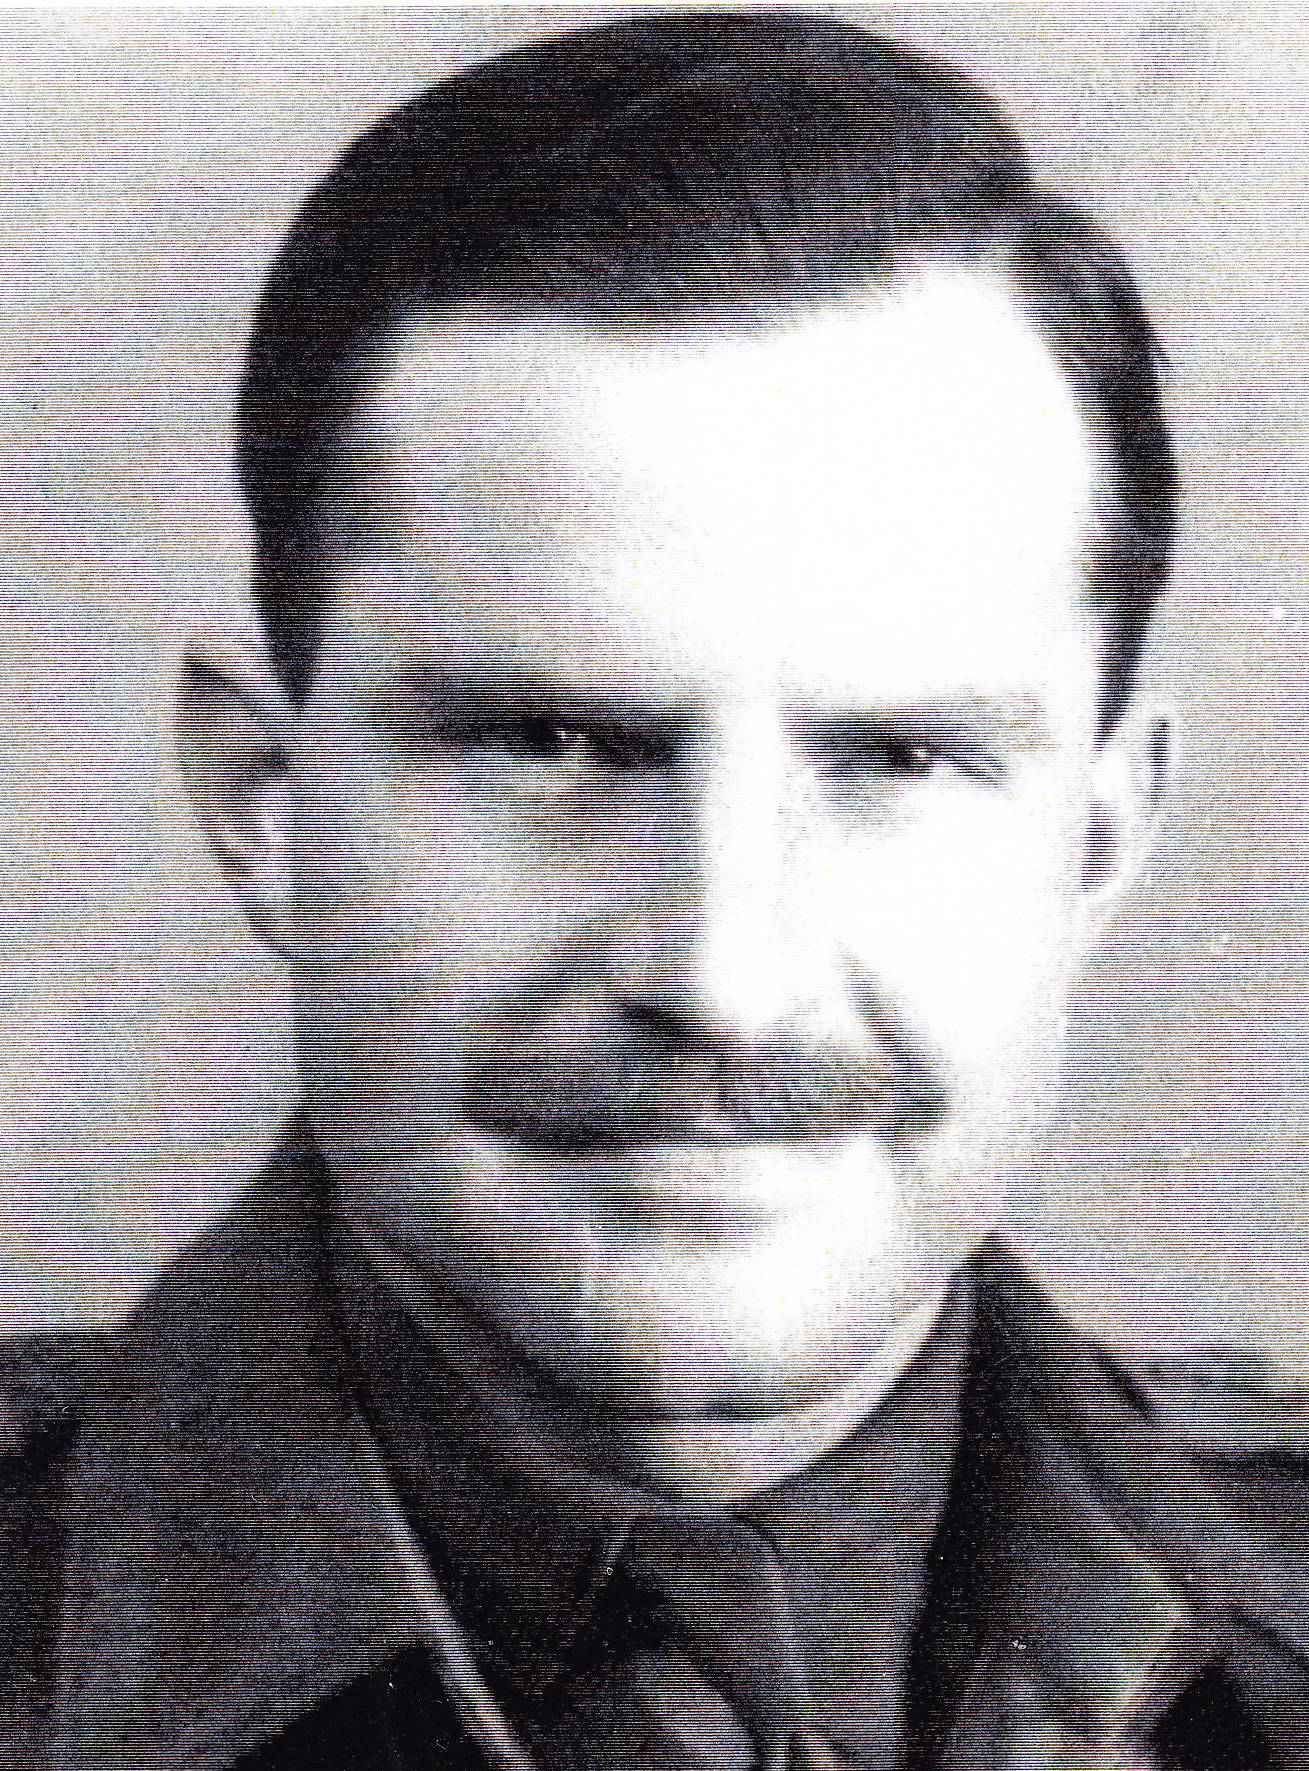 portrait of Lieutenant Robert Irwin taken in the Netherlands in 1945